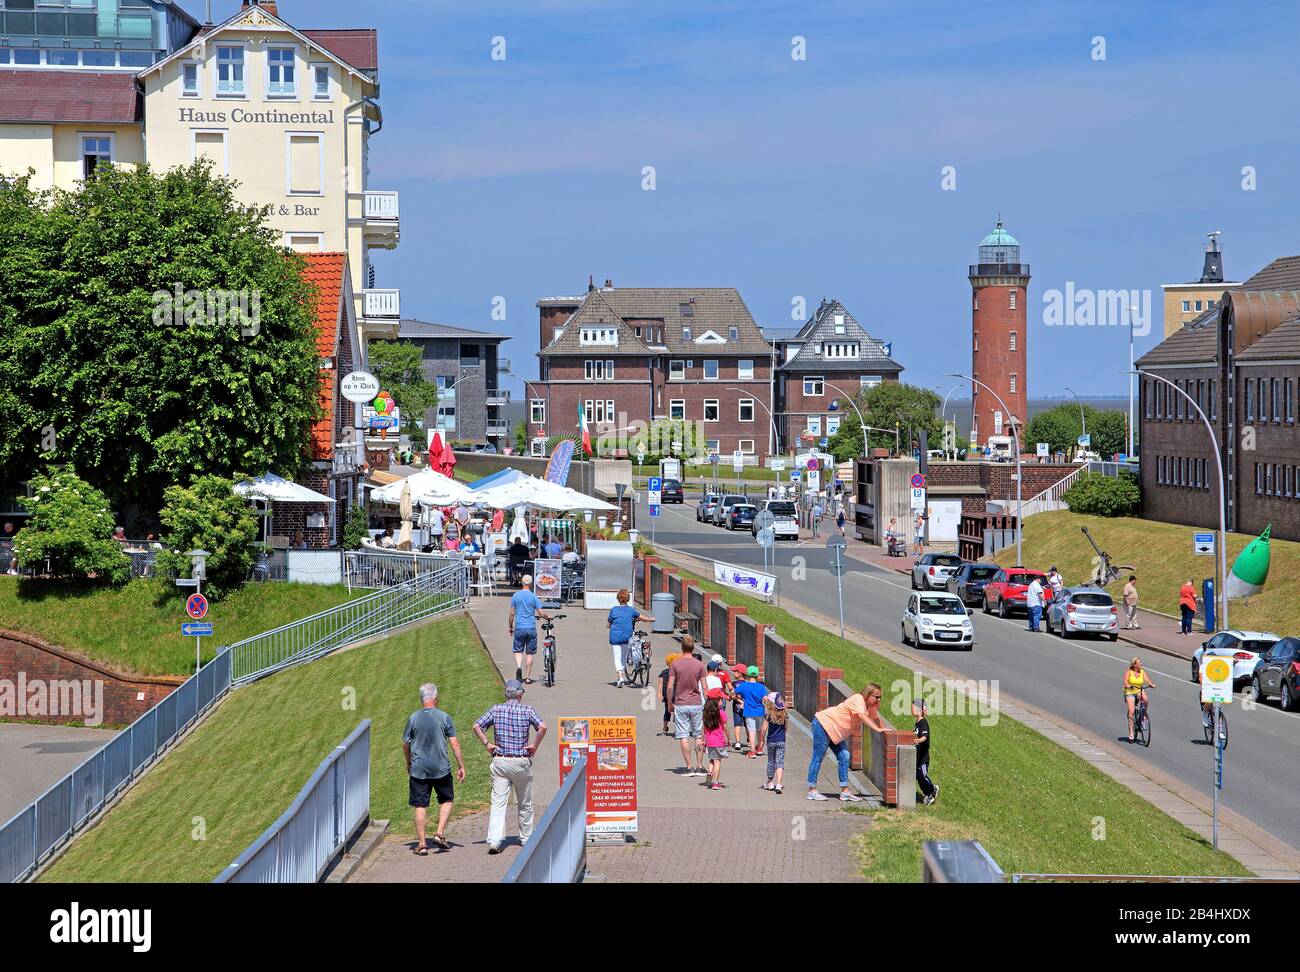 Promenade sur la digue du port avec terrasse de restaurant et phare de Hambourg, station de la mer du Nord Cuxhaven, estuaire de l'Elbe, mer du Nord, côte de la mer du Nord, Basse-Saxe, Allemagne Banque D'Images